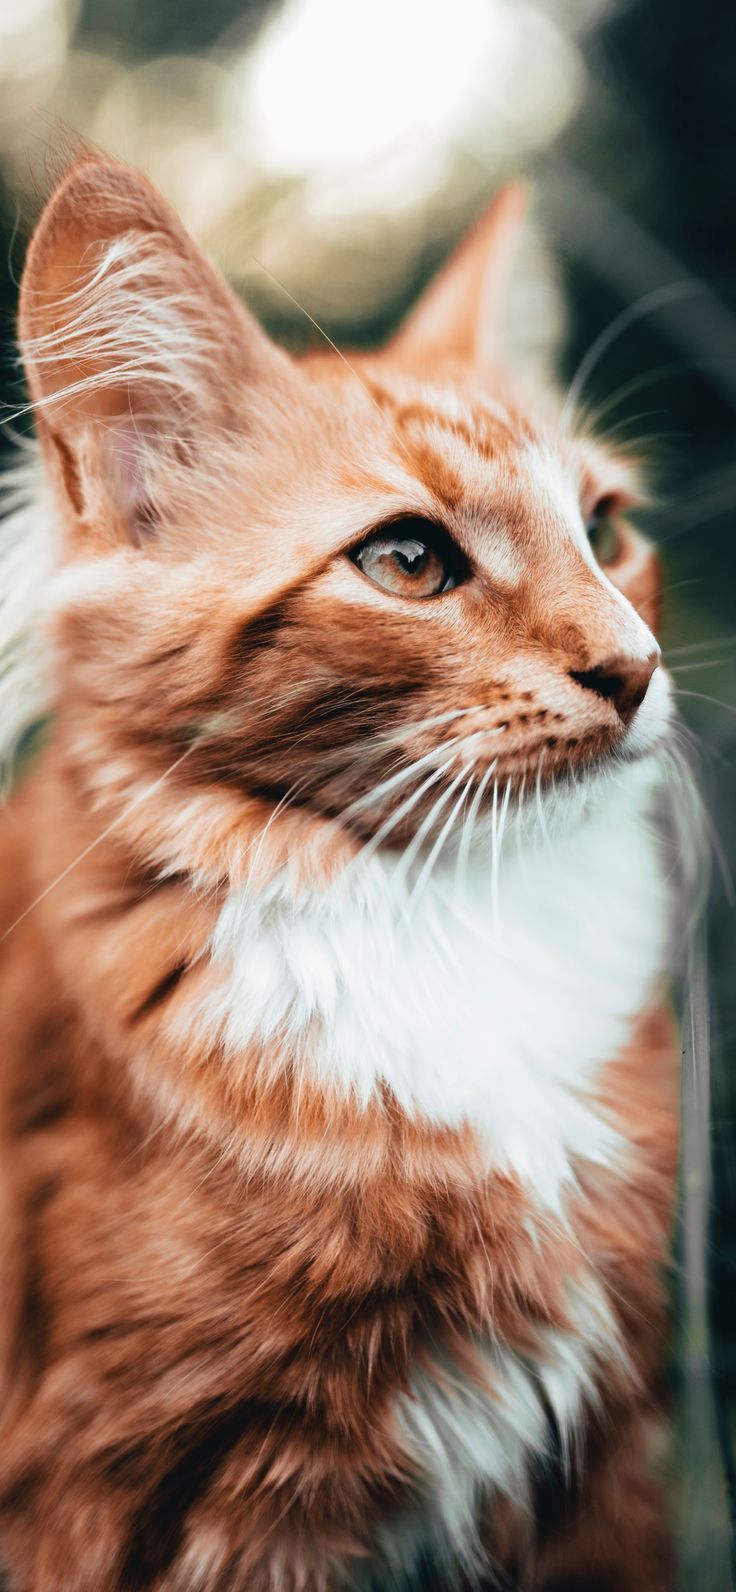 Beautiful Orange Cat Wallpaper For iPhone XR, iPhone XS, iPhone XS Max 2. - #Beautiful #Cat #iPhone #Max #Meow. Cat photography, Cat wallpaper, Orange cat